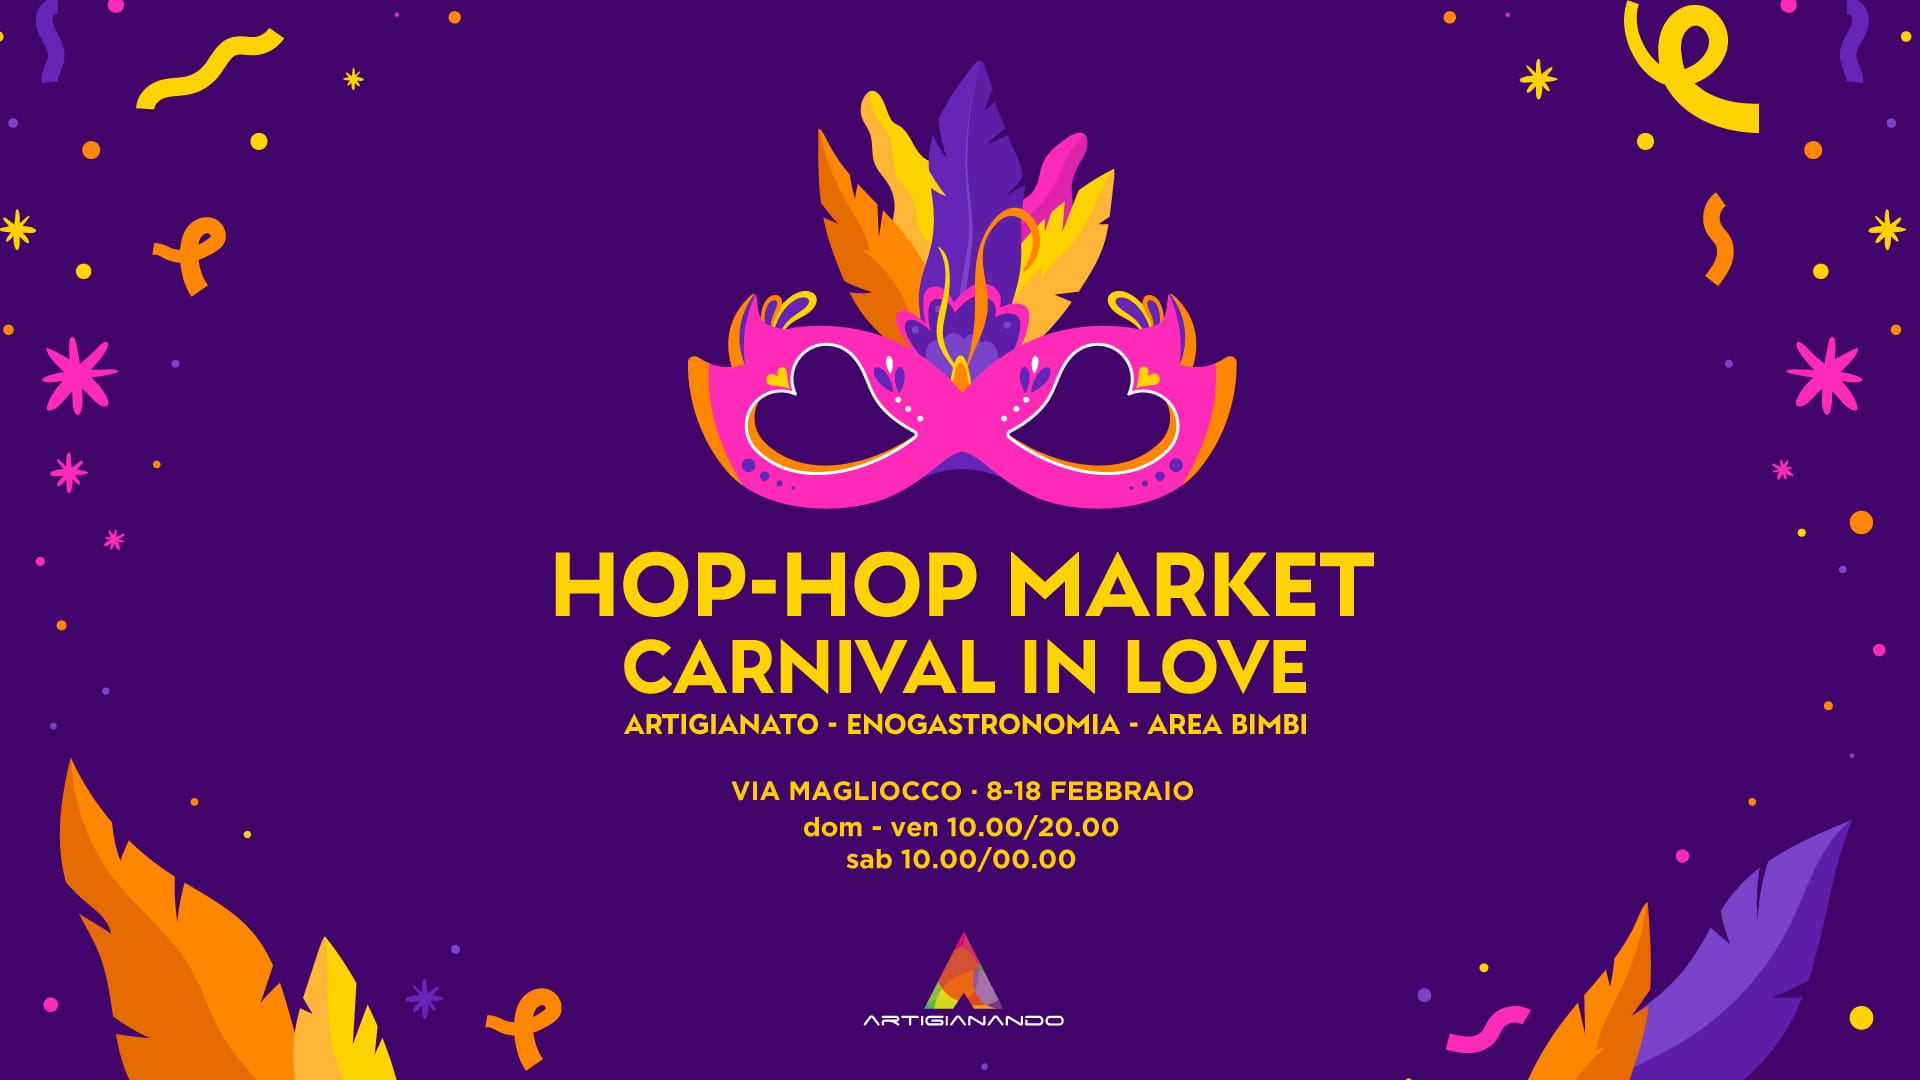 Hop Hop Market “Carnival in love”, fiera mercato dedicata all’artigianato e al Carnevale